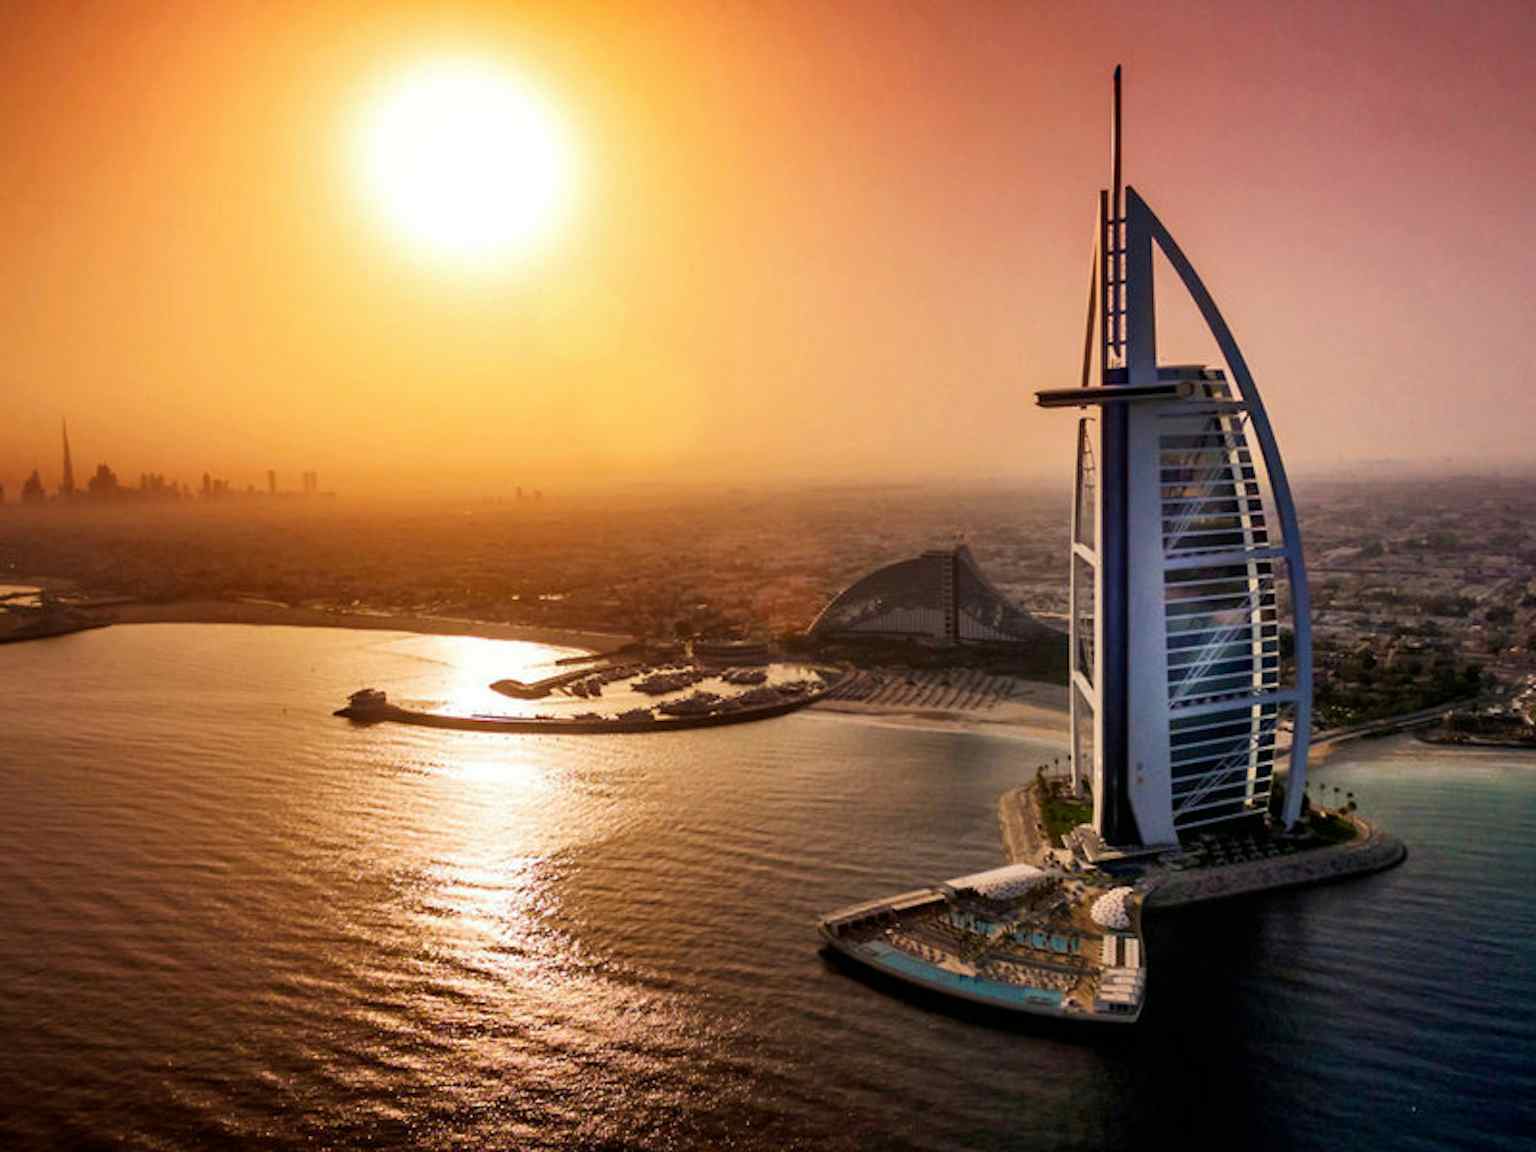 Burj Al Arab Jumeirah, Dubai